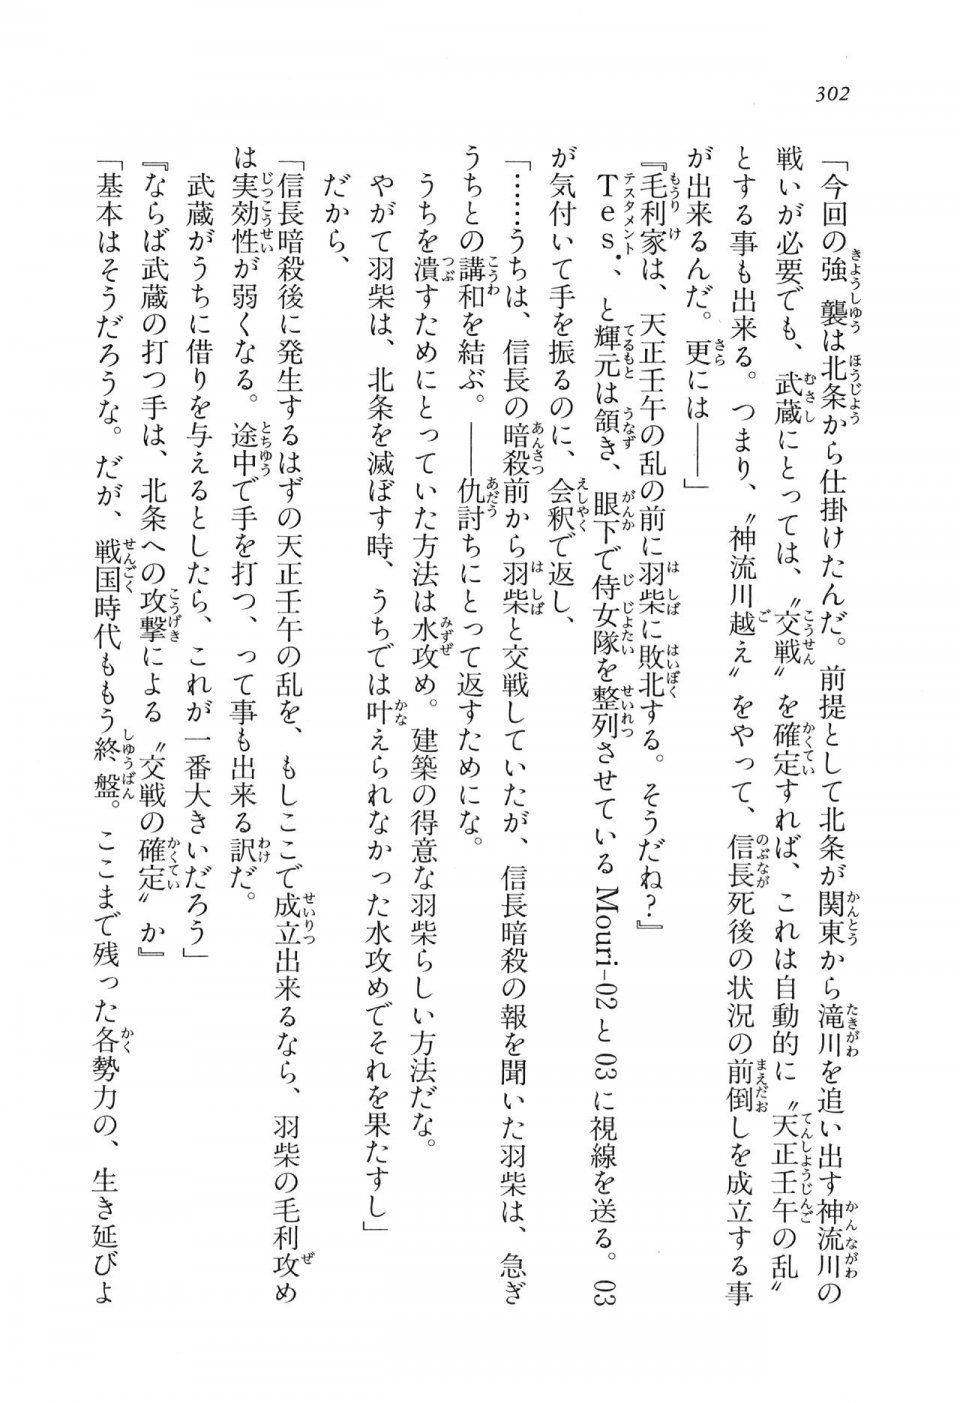 Kyoukai Senjou no Horizon LN Vol 11(5A) - Photo #302